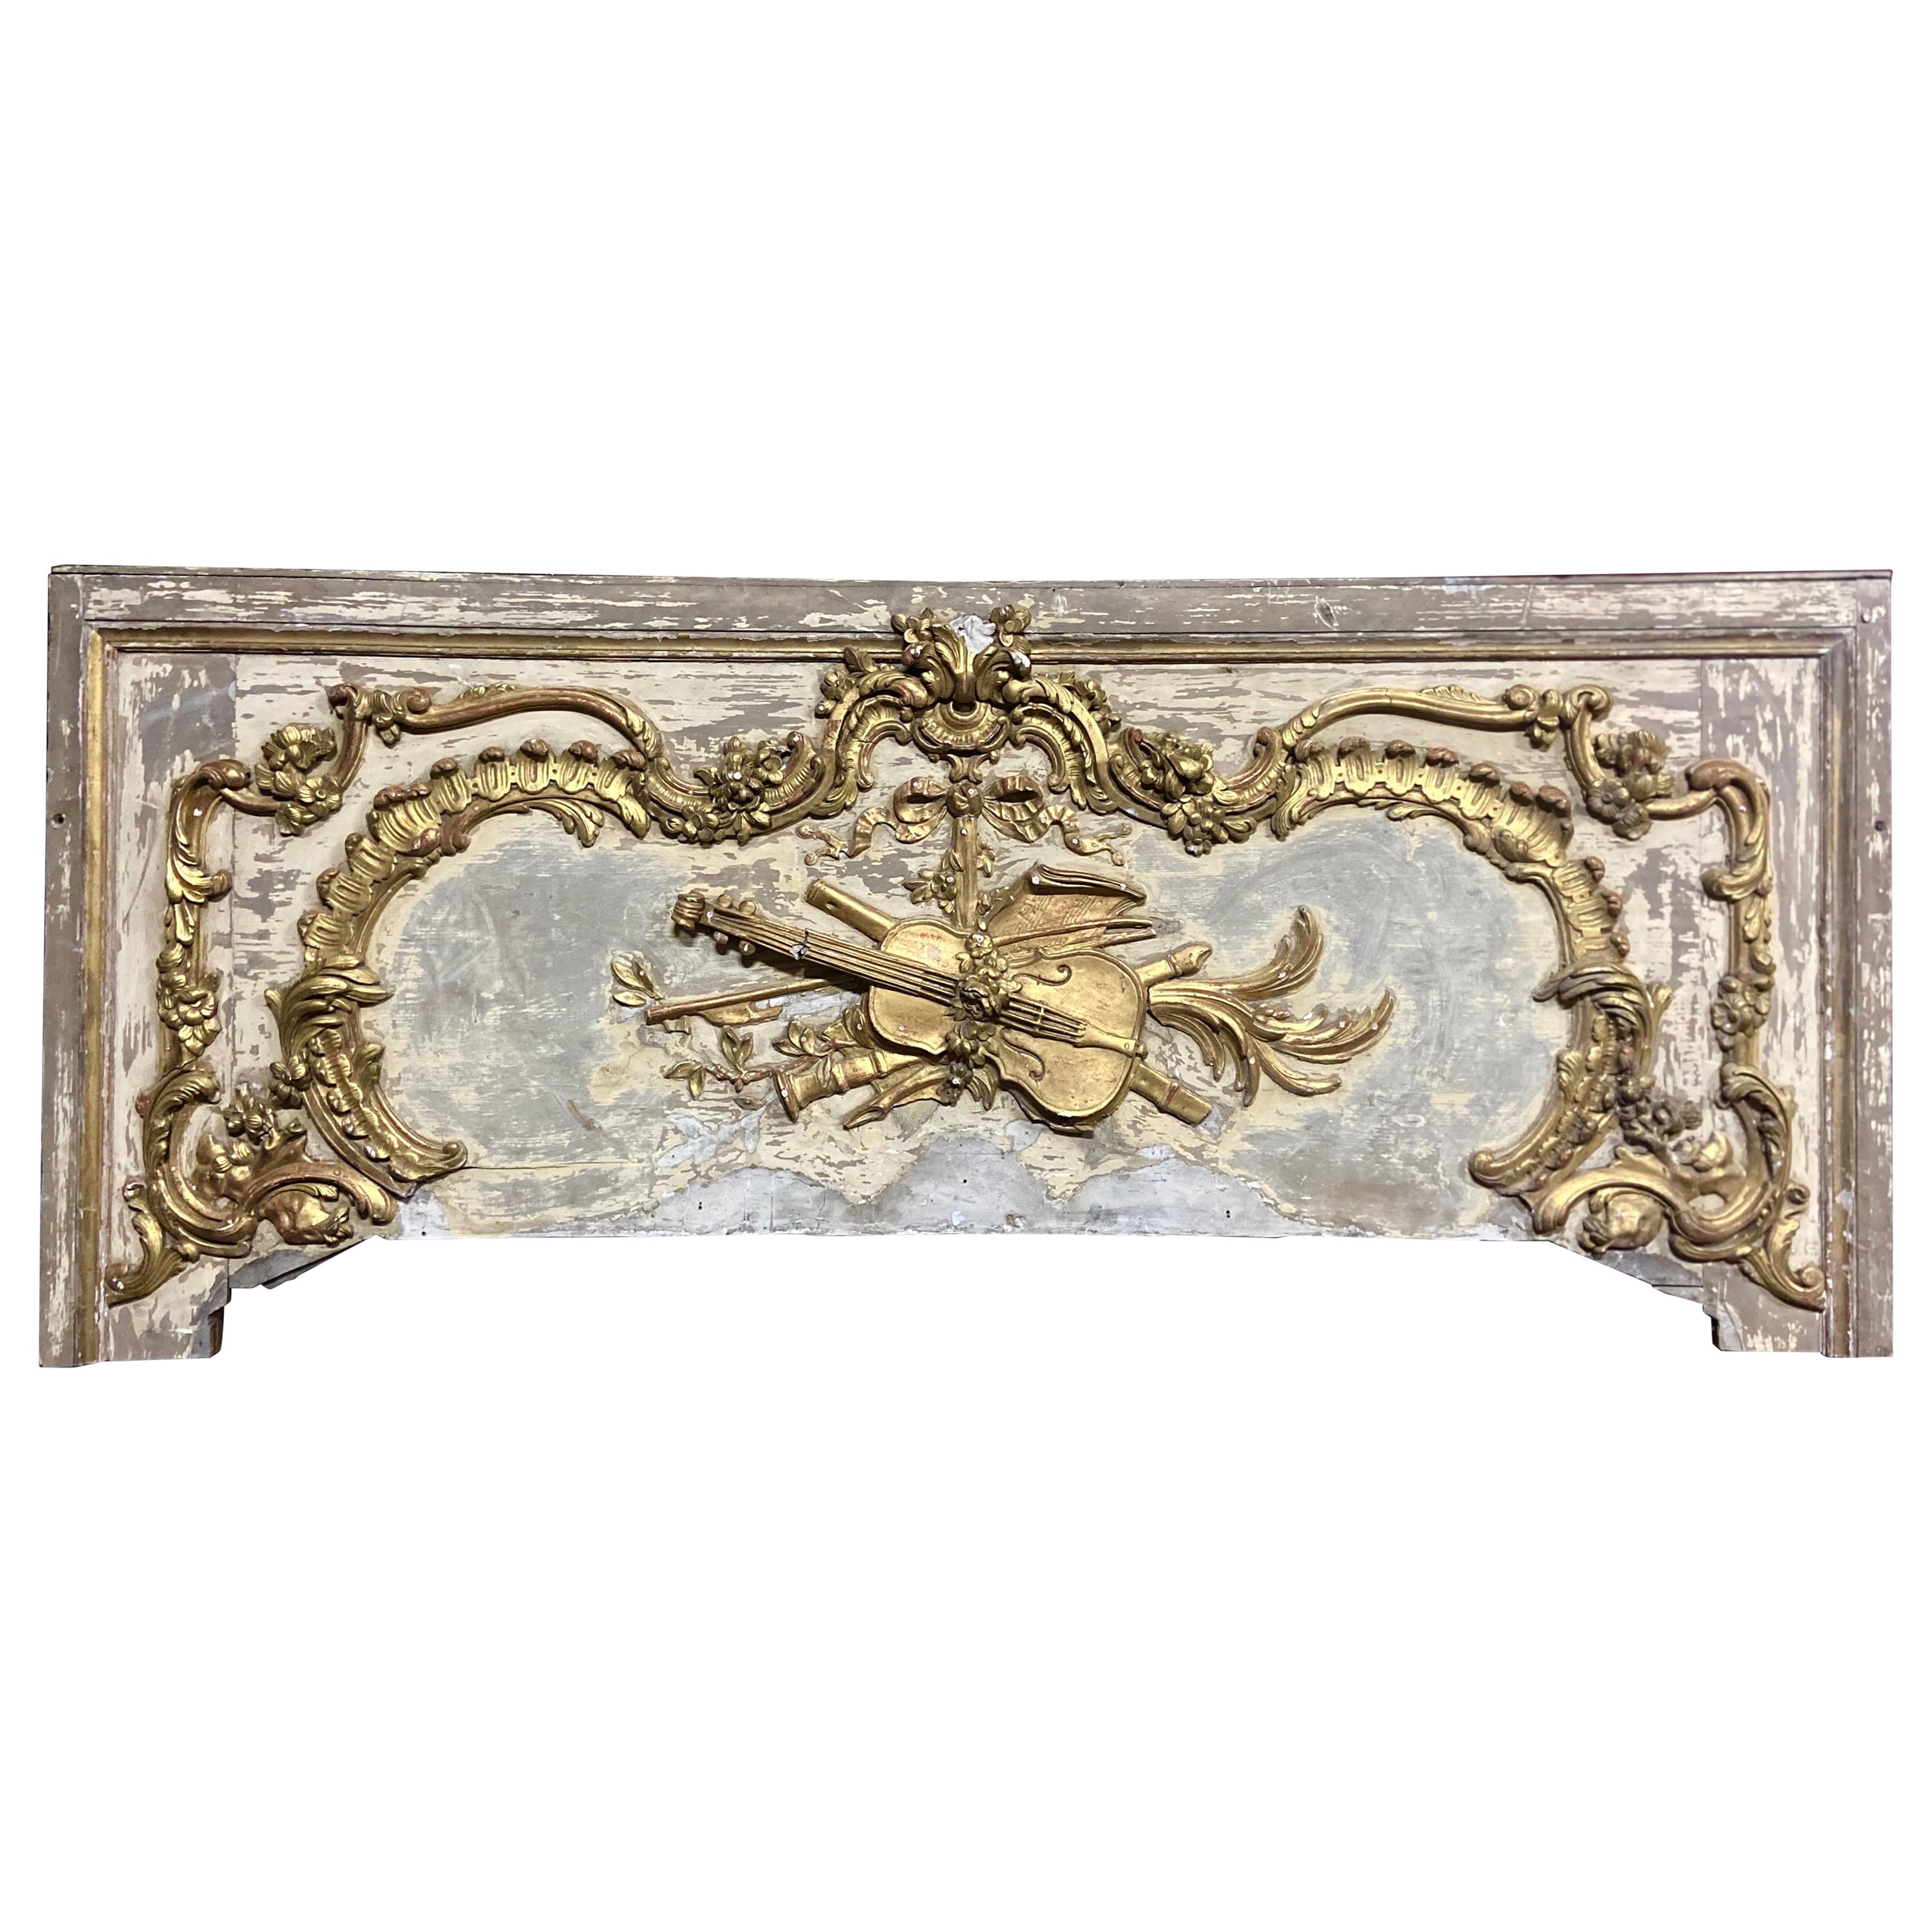 Grand élément décoratif ou tête de lit en bois doré sculpté à la main du 19ème siècle français